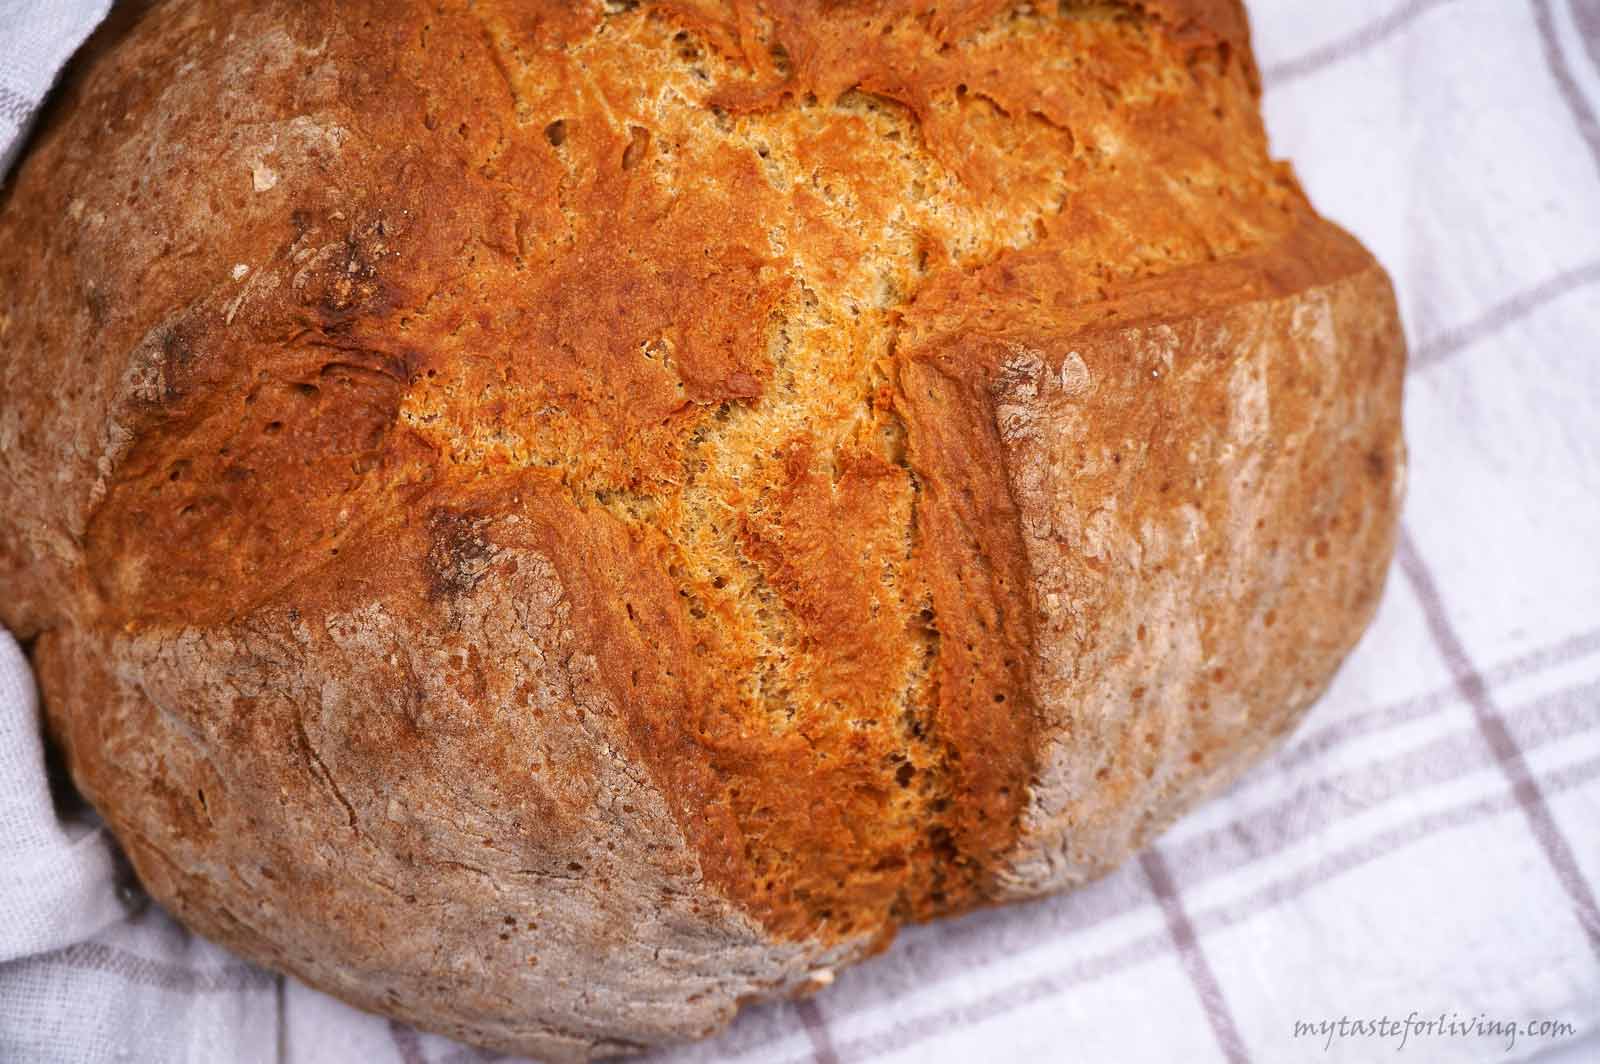 Традиционният ирландски хляб се приготвя от четири съставки – меко пшенично брашно (по възможност с ниско съдържание на глутен), сода бикарбонат, сол и мътеница (или айрян). Приготвя се изключително лесно и бързо - всички съставки се сместват и се получава тесто без много усилие, а след изпичането му се получава вкусен, ароматен и с апетитна коричка хляб. 